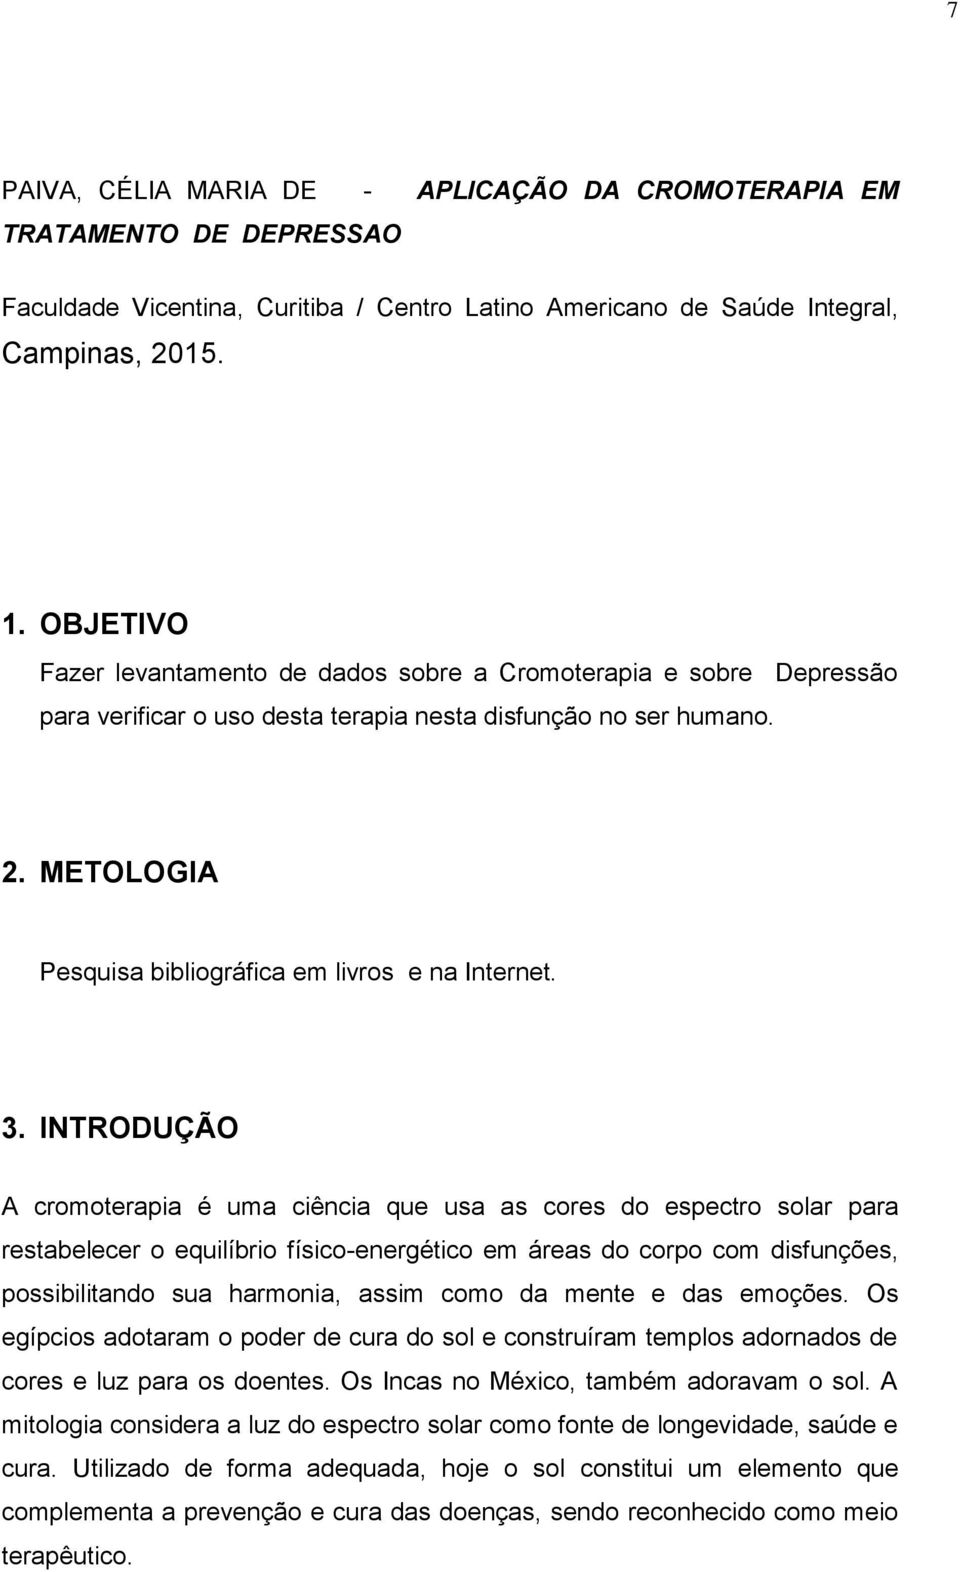 CELIA MARIA DE PAIVA - PDF Download grátis